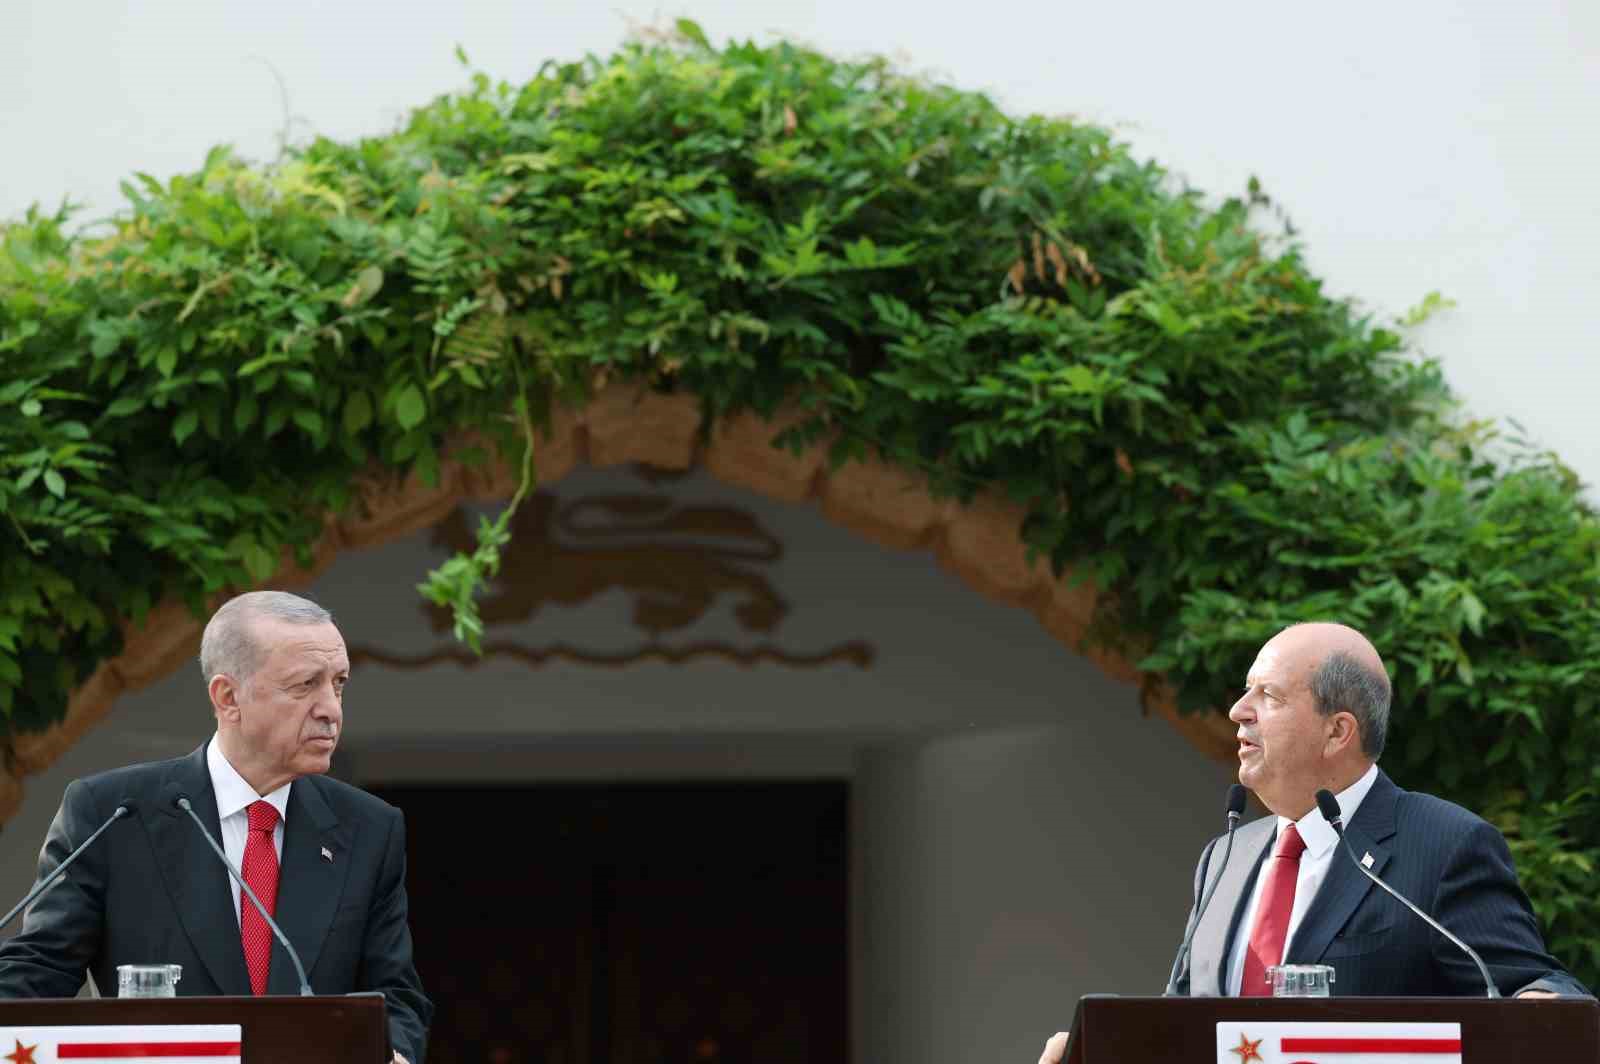 Cumhurbaşkanı Erdoğan: “Müzakere masasına geri dönülecekse bunun yolu Kuzey Kıbrıs Türk Cumhuriyeti’nin tanınmasından geçmektedir